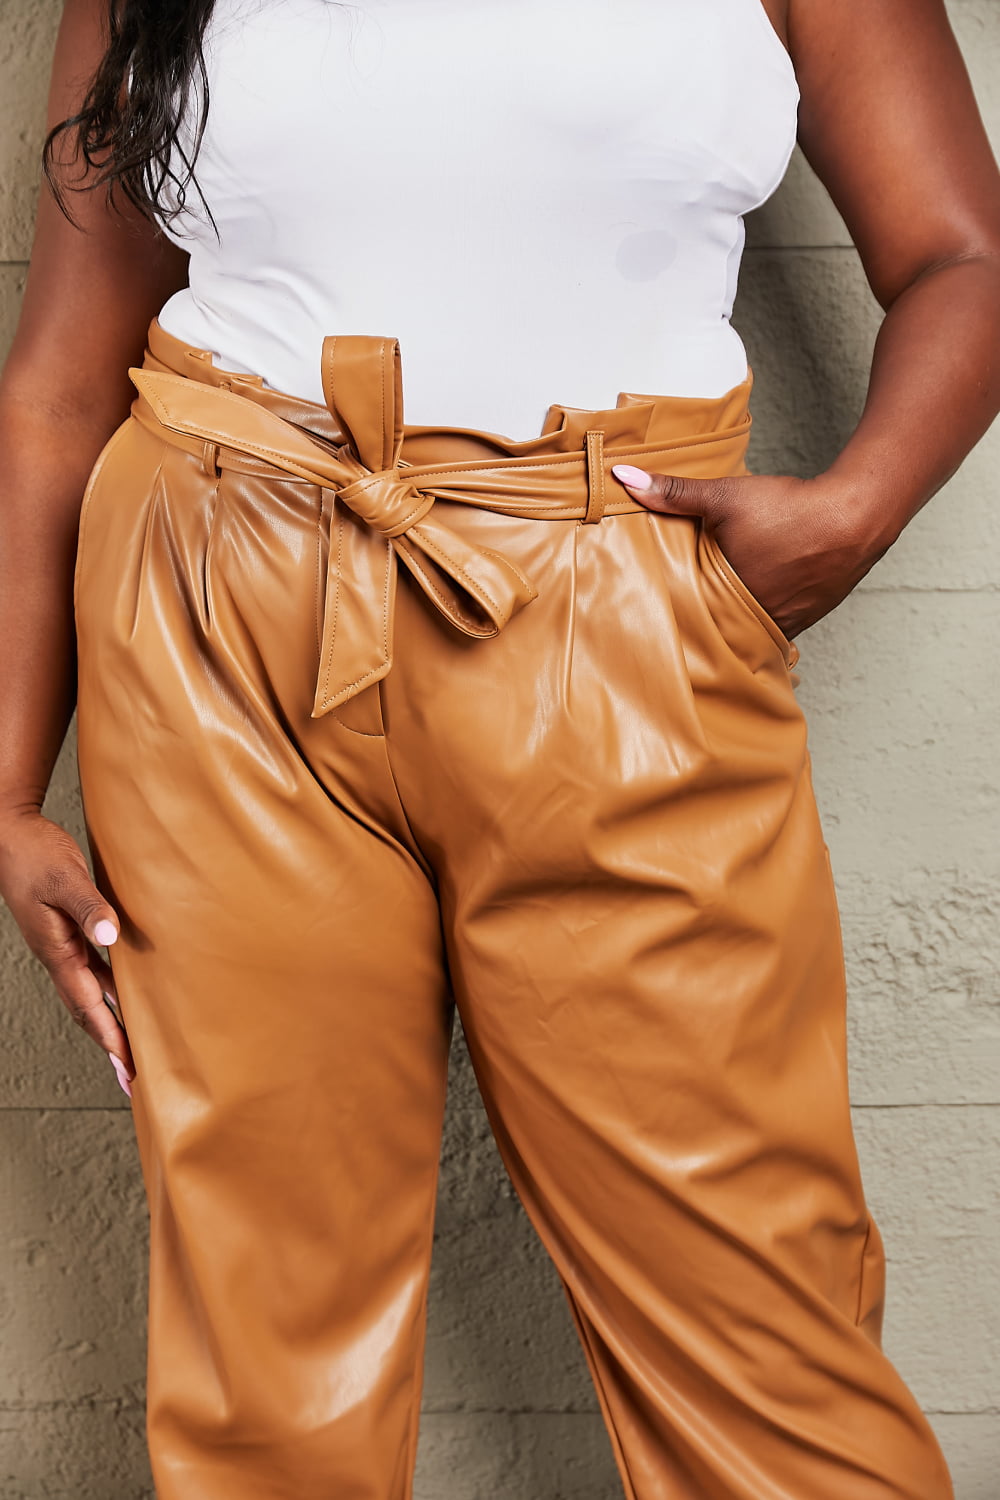 HEYSON Potente You Pantalones con cintura paperbag de piel sintética de tamaño completo